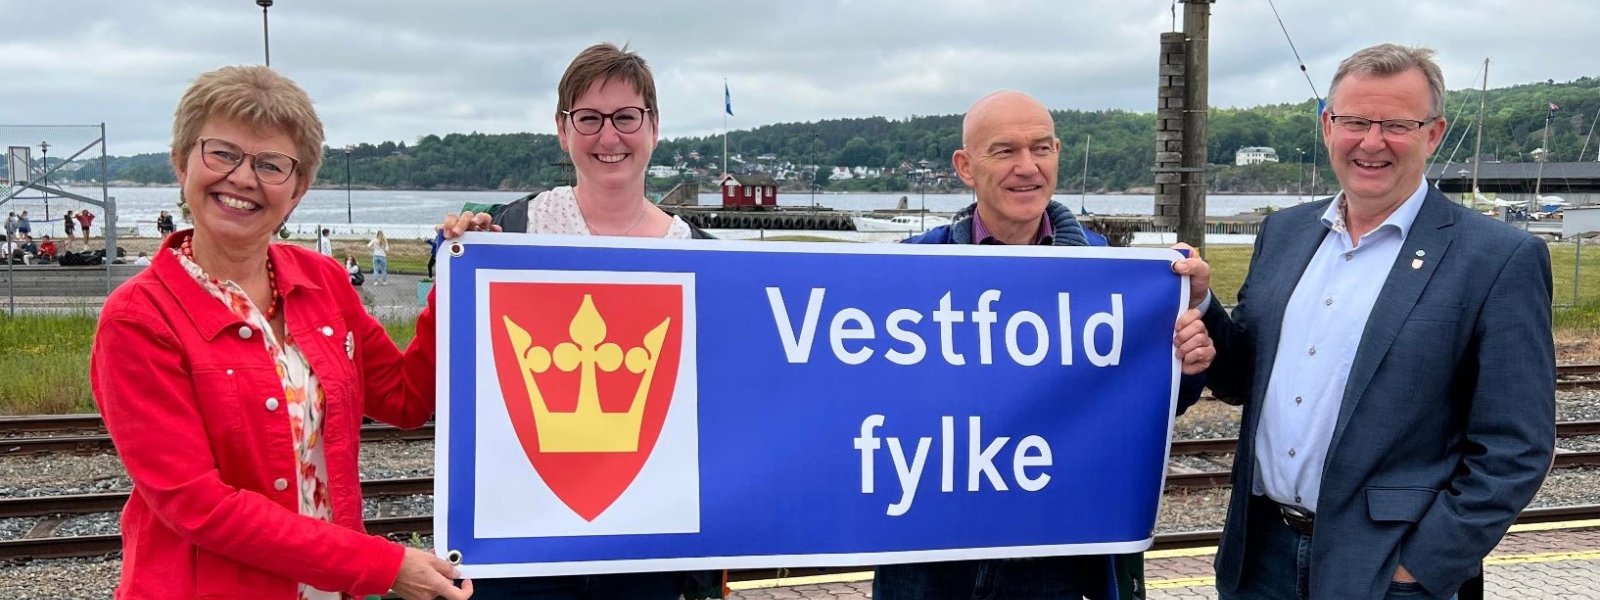 Vestfold fylke